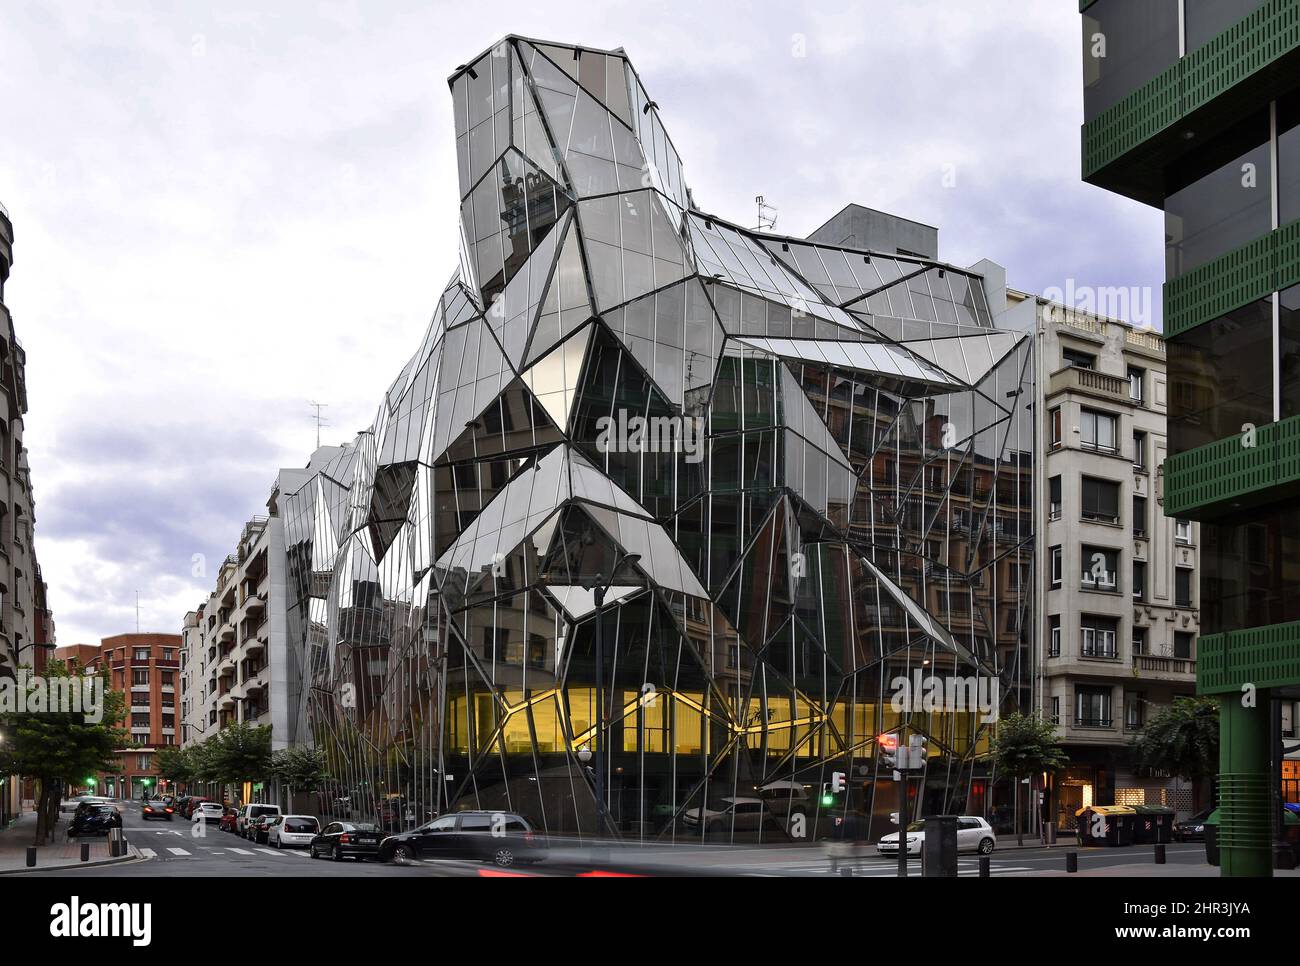 Osakidetza est un immeuble de bureaux moderne conçu par les architectes Coll-Barreu à Bilbao, en Espagne. Banque D'Images